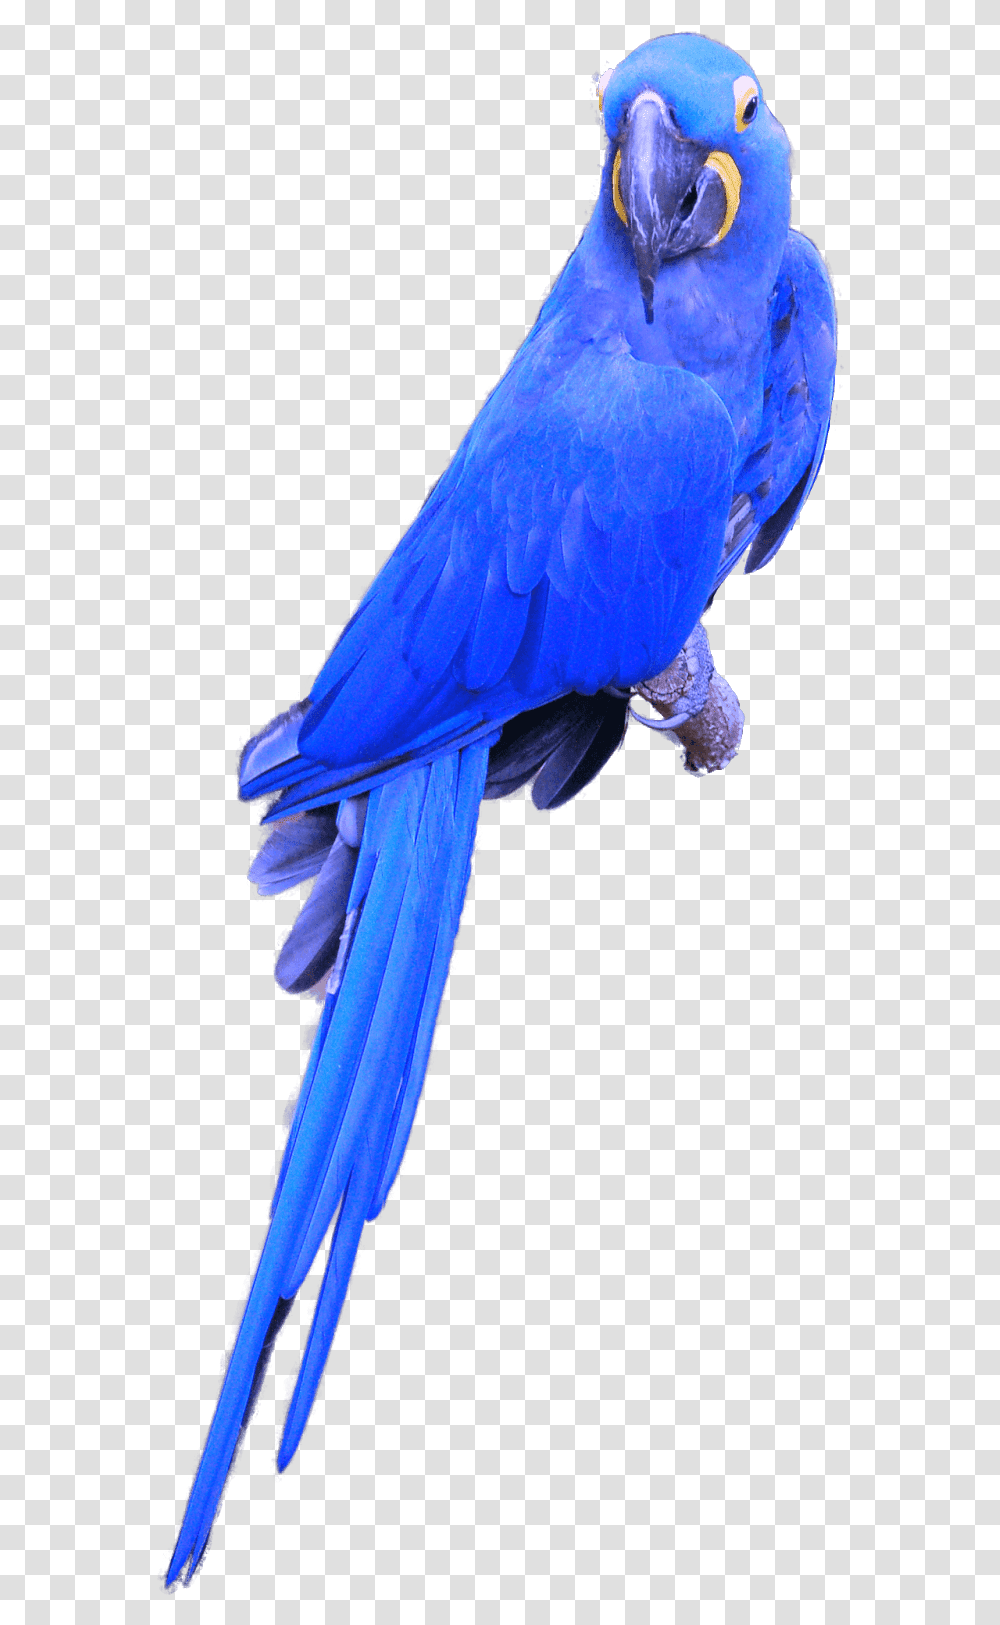 Hyacinth Macaw, Bird, Animal, Parrot Transparent Png